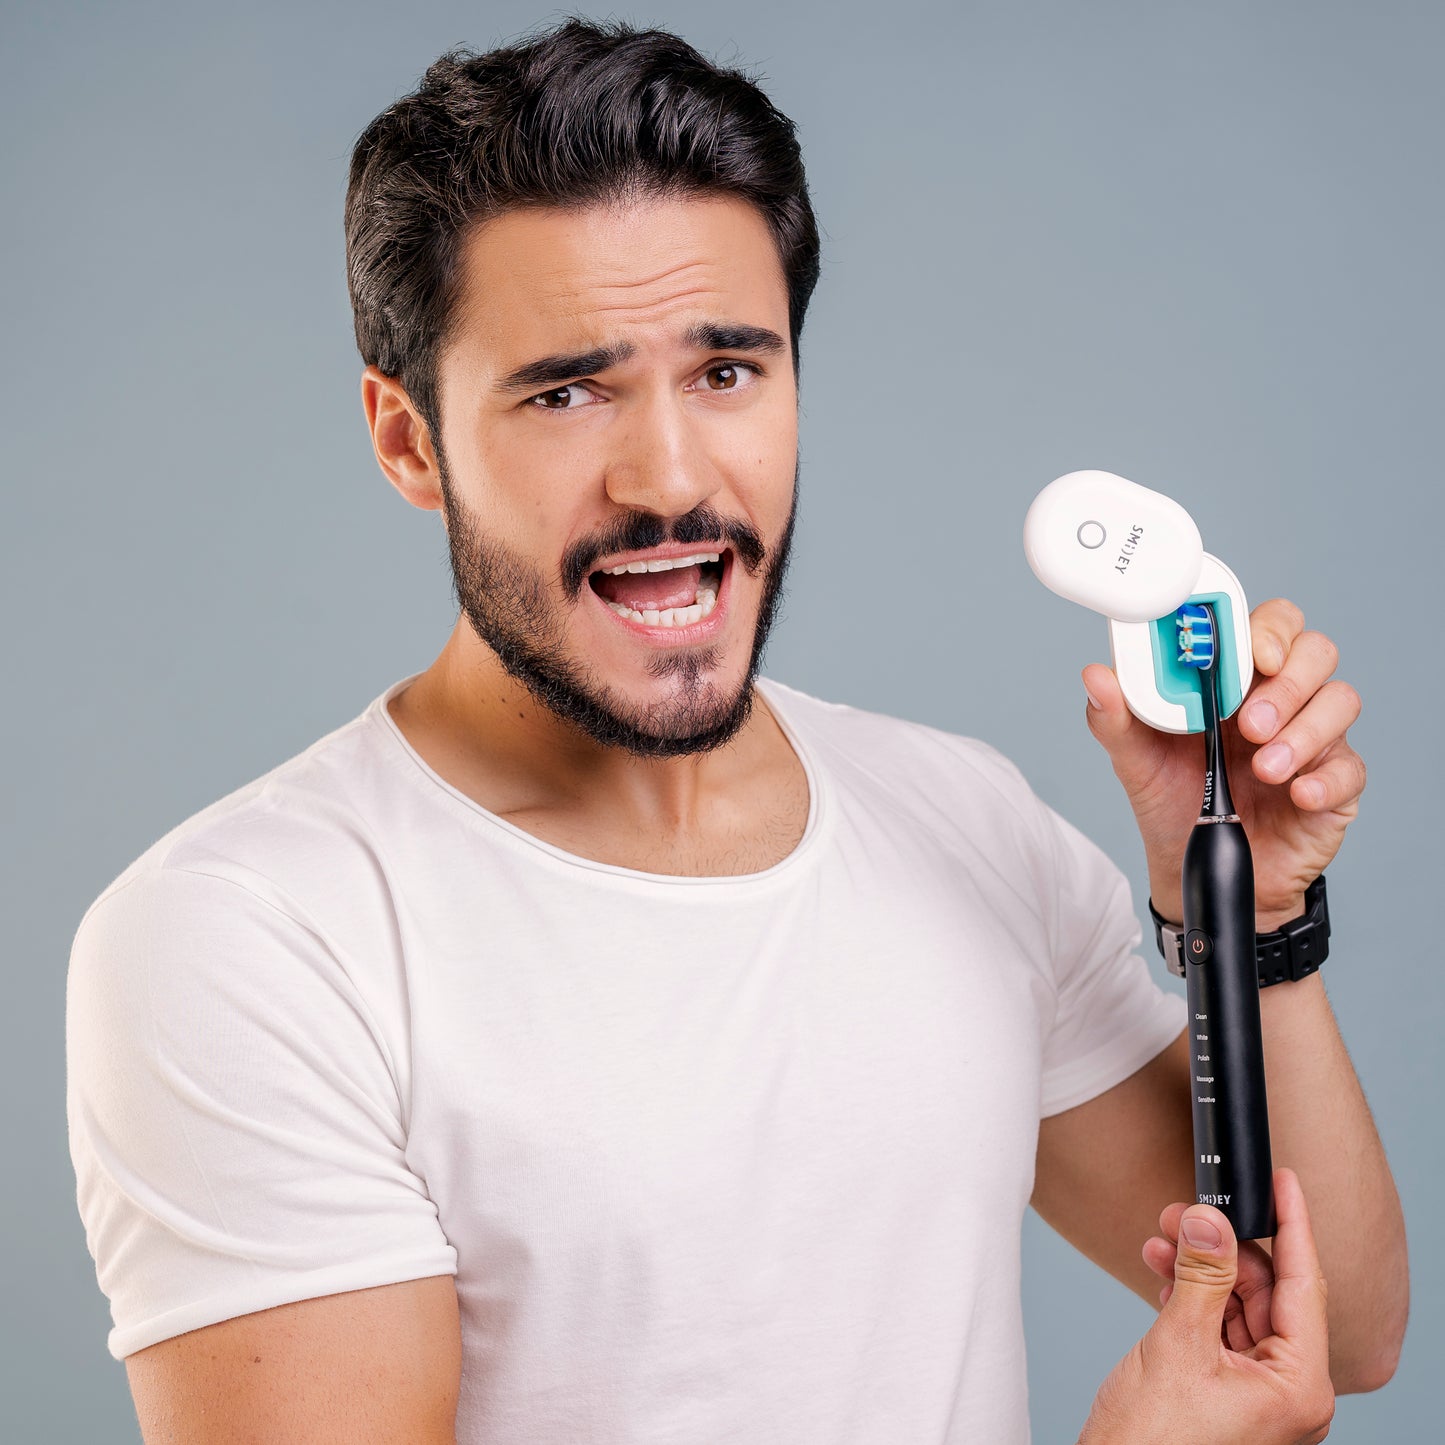 НАБОР электрическая зубная щетка Smiley Pro White черная + стерилизатор  купить электро зубную щетку купить зубную электрощетку купить зубную щетку электрическую купити електричну зубну щітку електрична зубна щітка купити